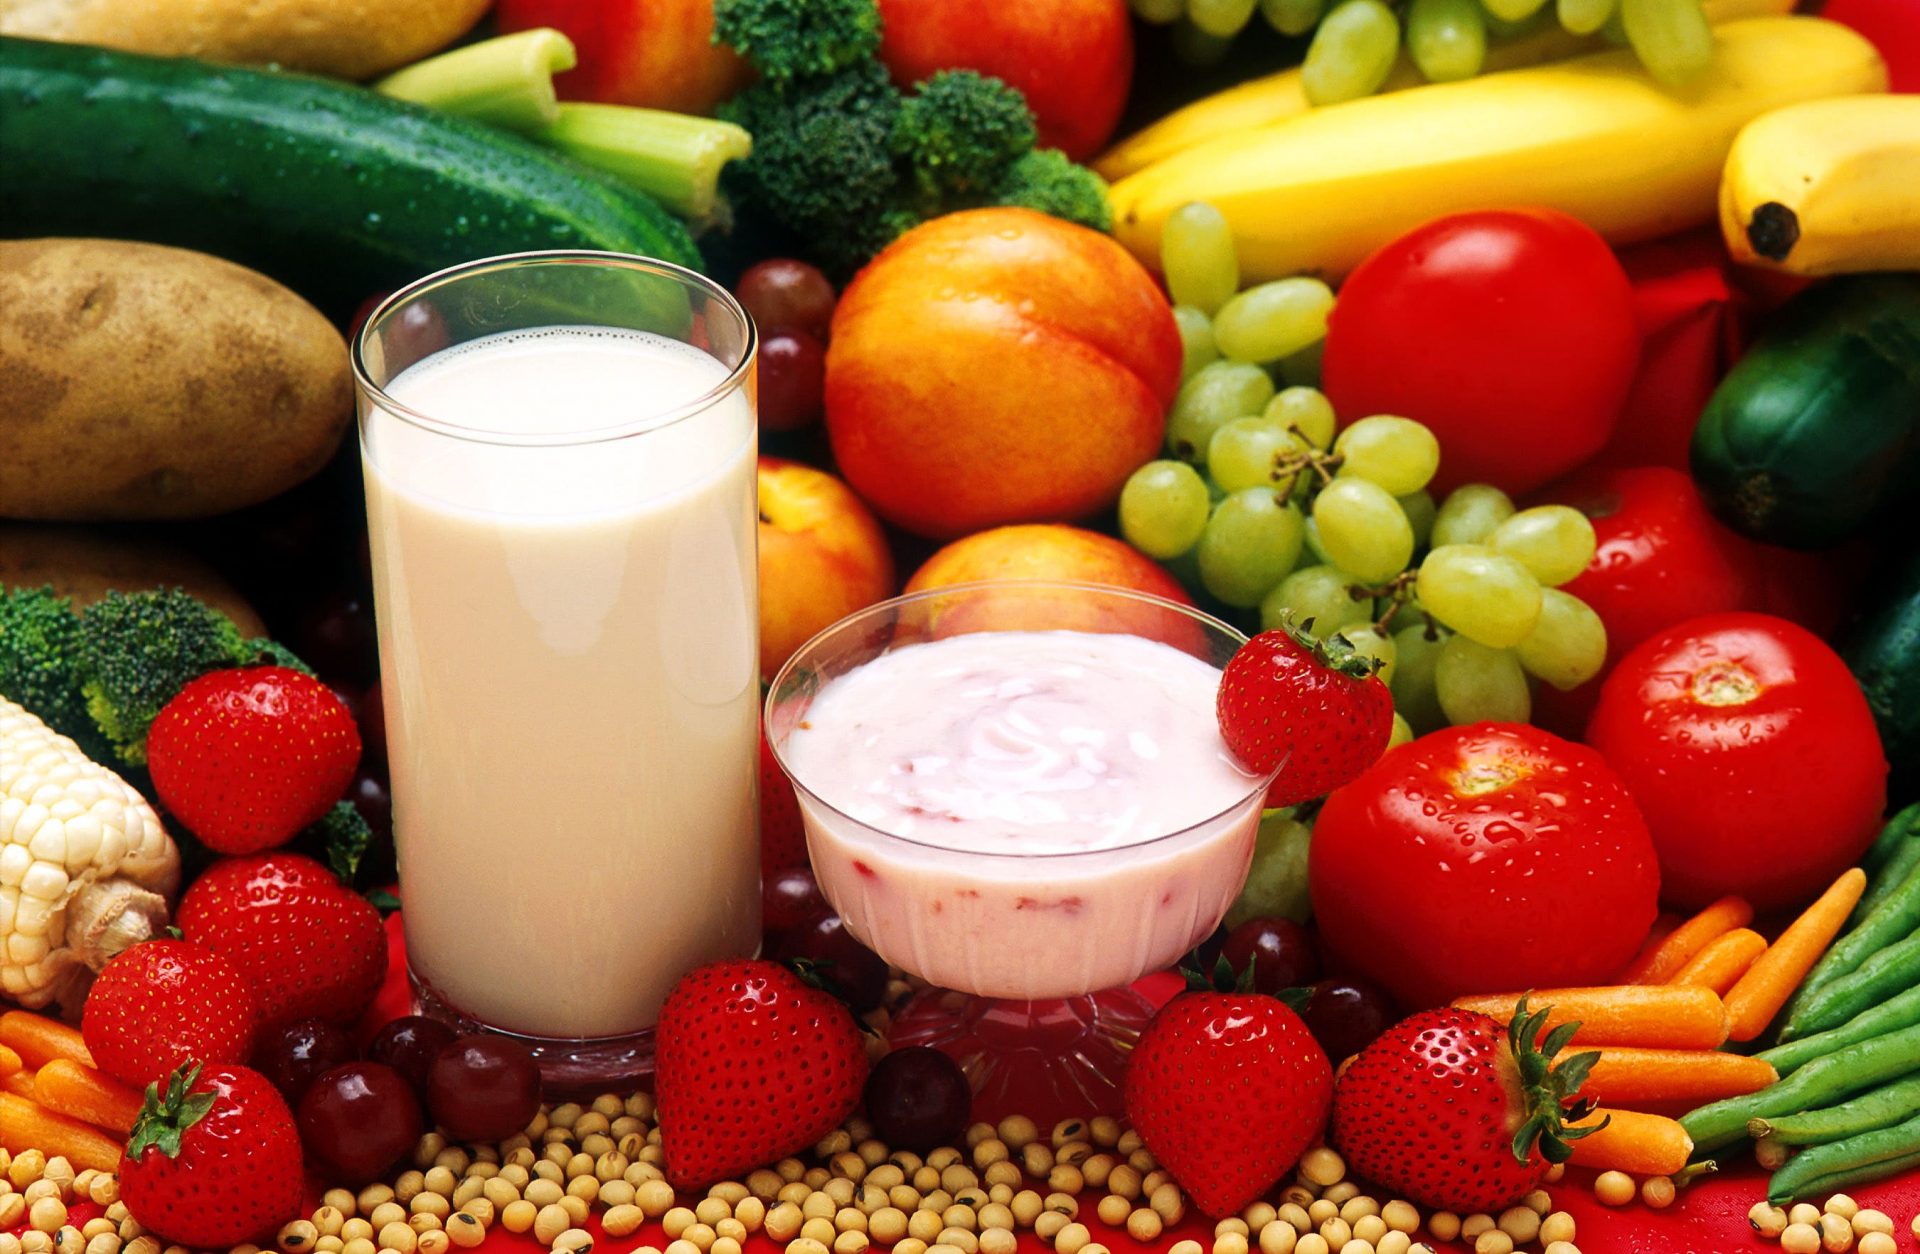 Assortiment de fruits, légumes, légumineuses, produits laitiers et les meilleures protéines de lactosérum présentant une variété d'options alimentaires saines.